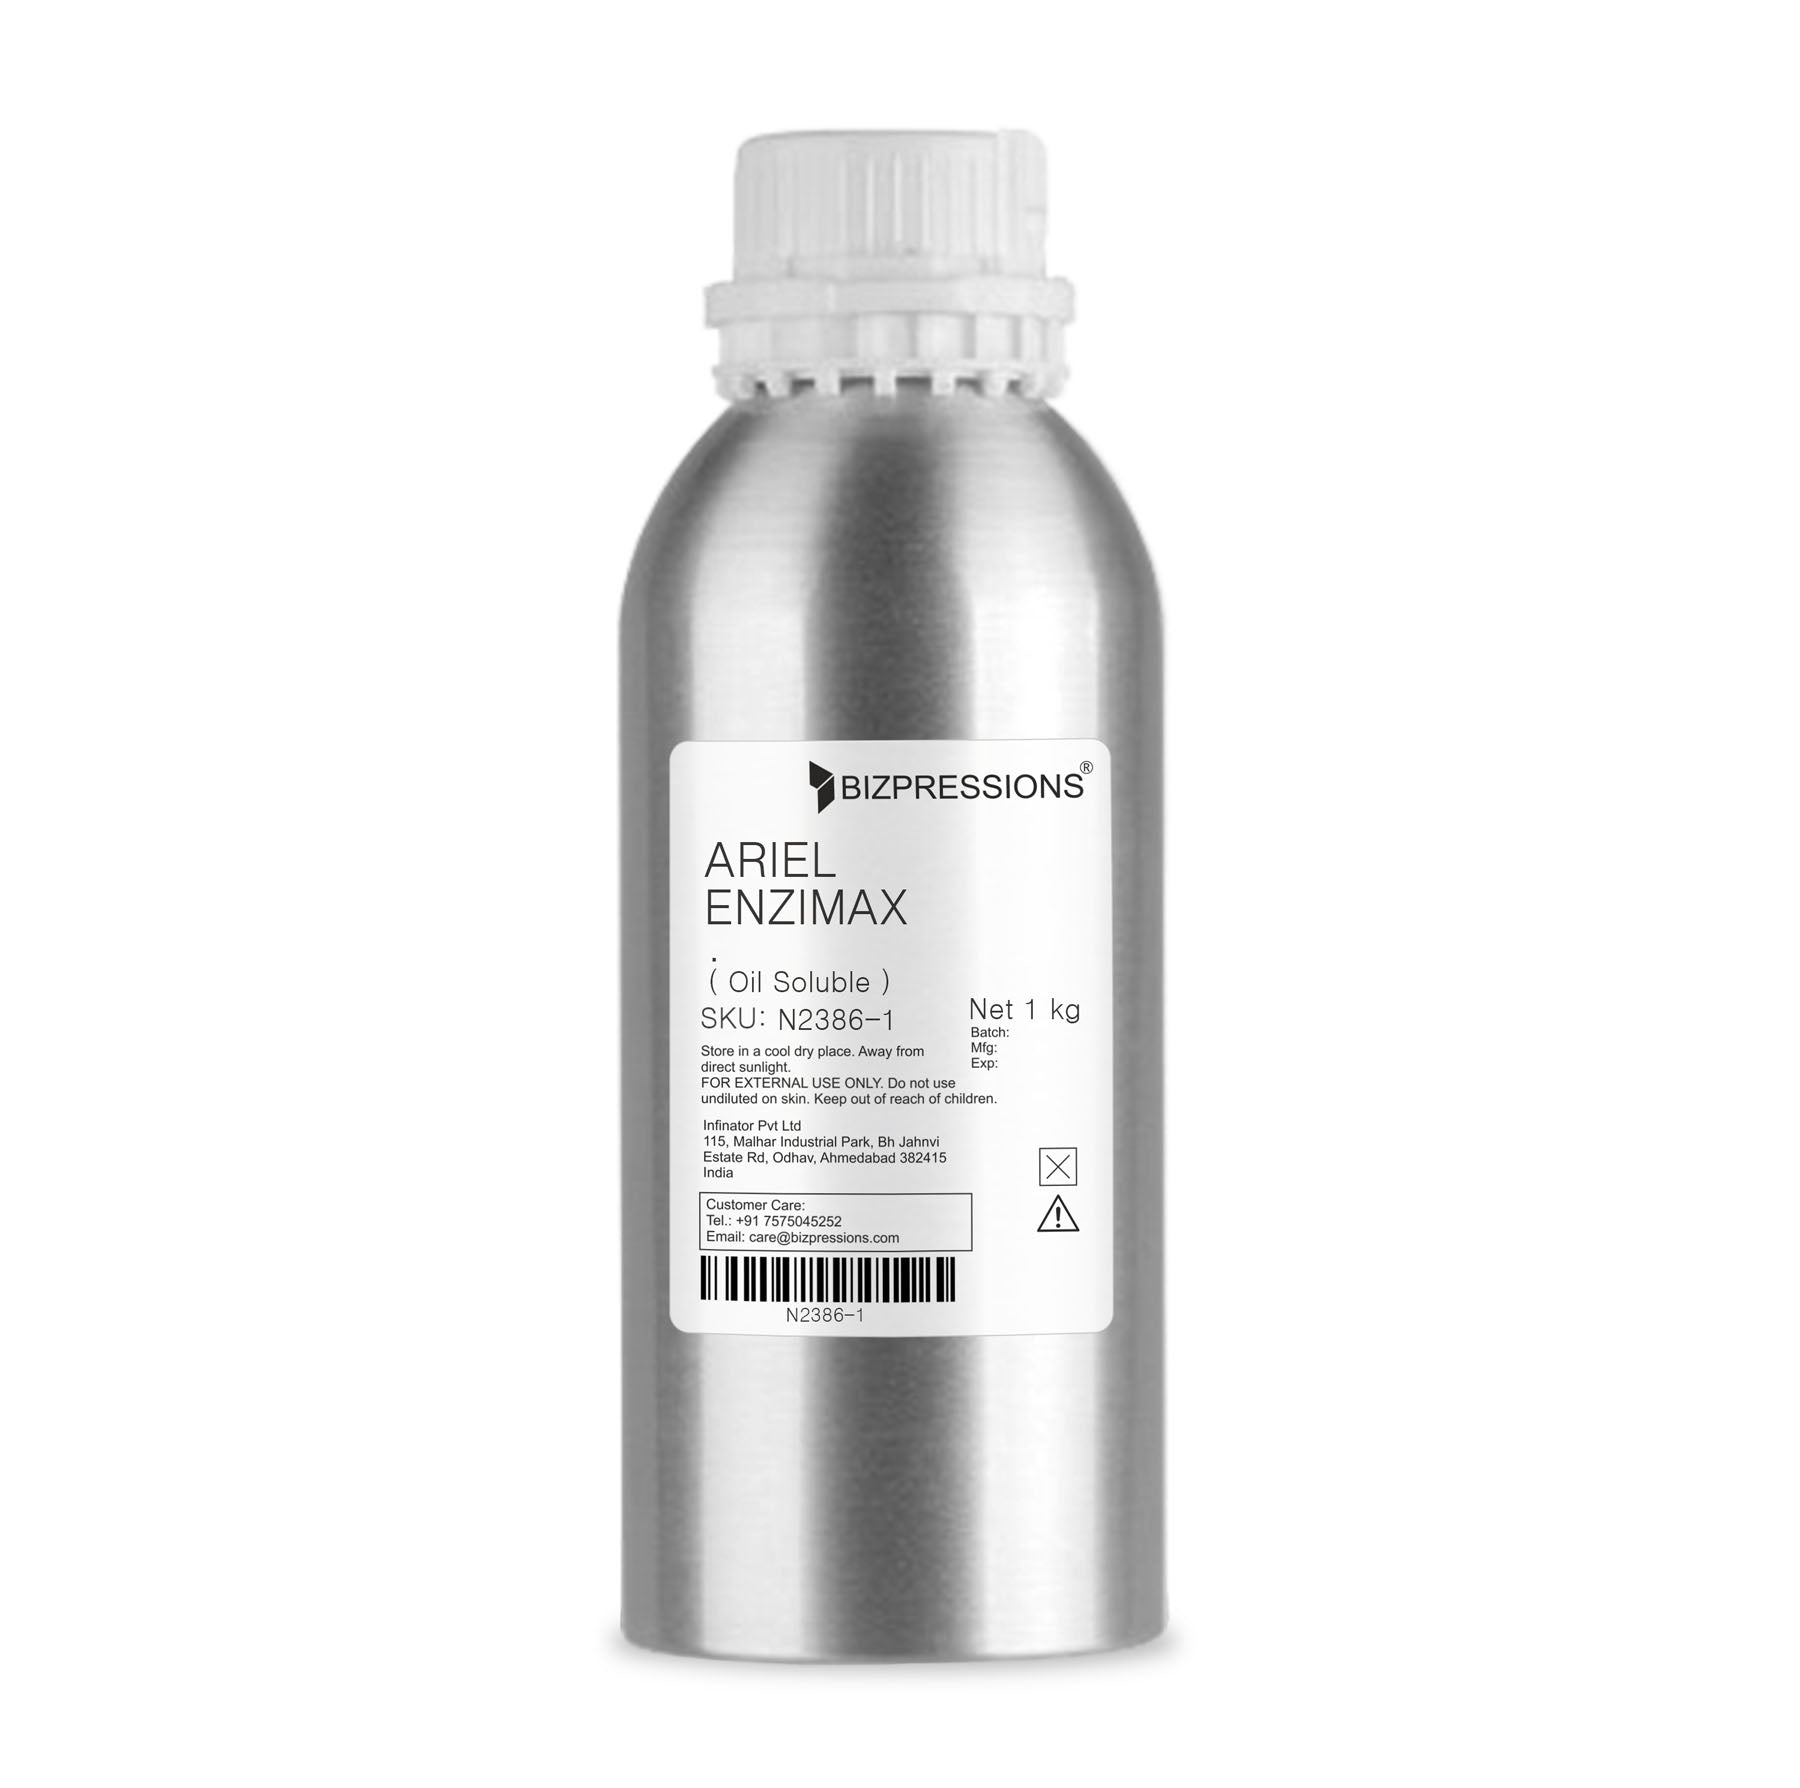 ARIEL ENZIMAX - Fragrance ( Oil Soluble ) - 1 kg